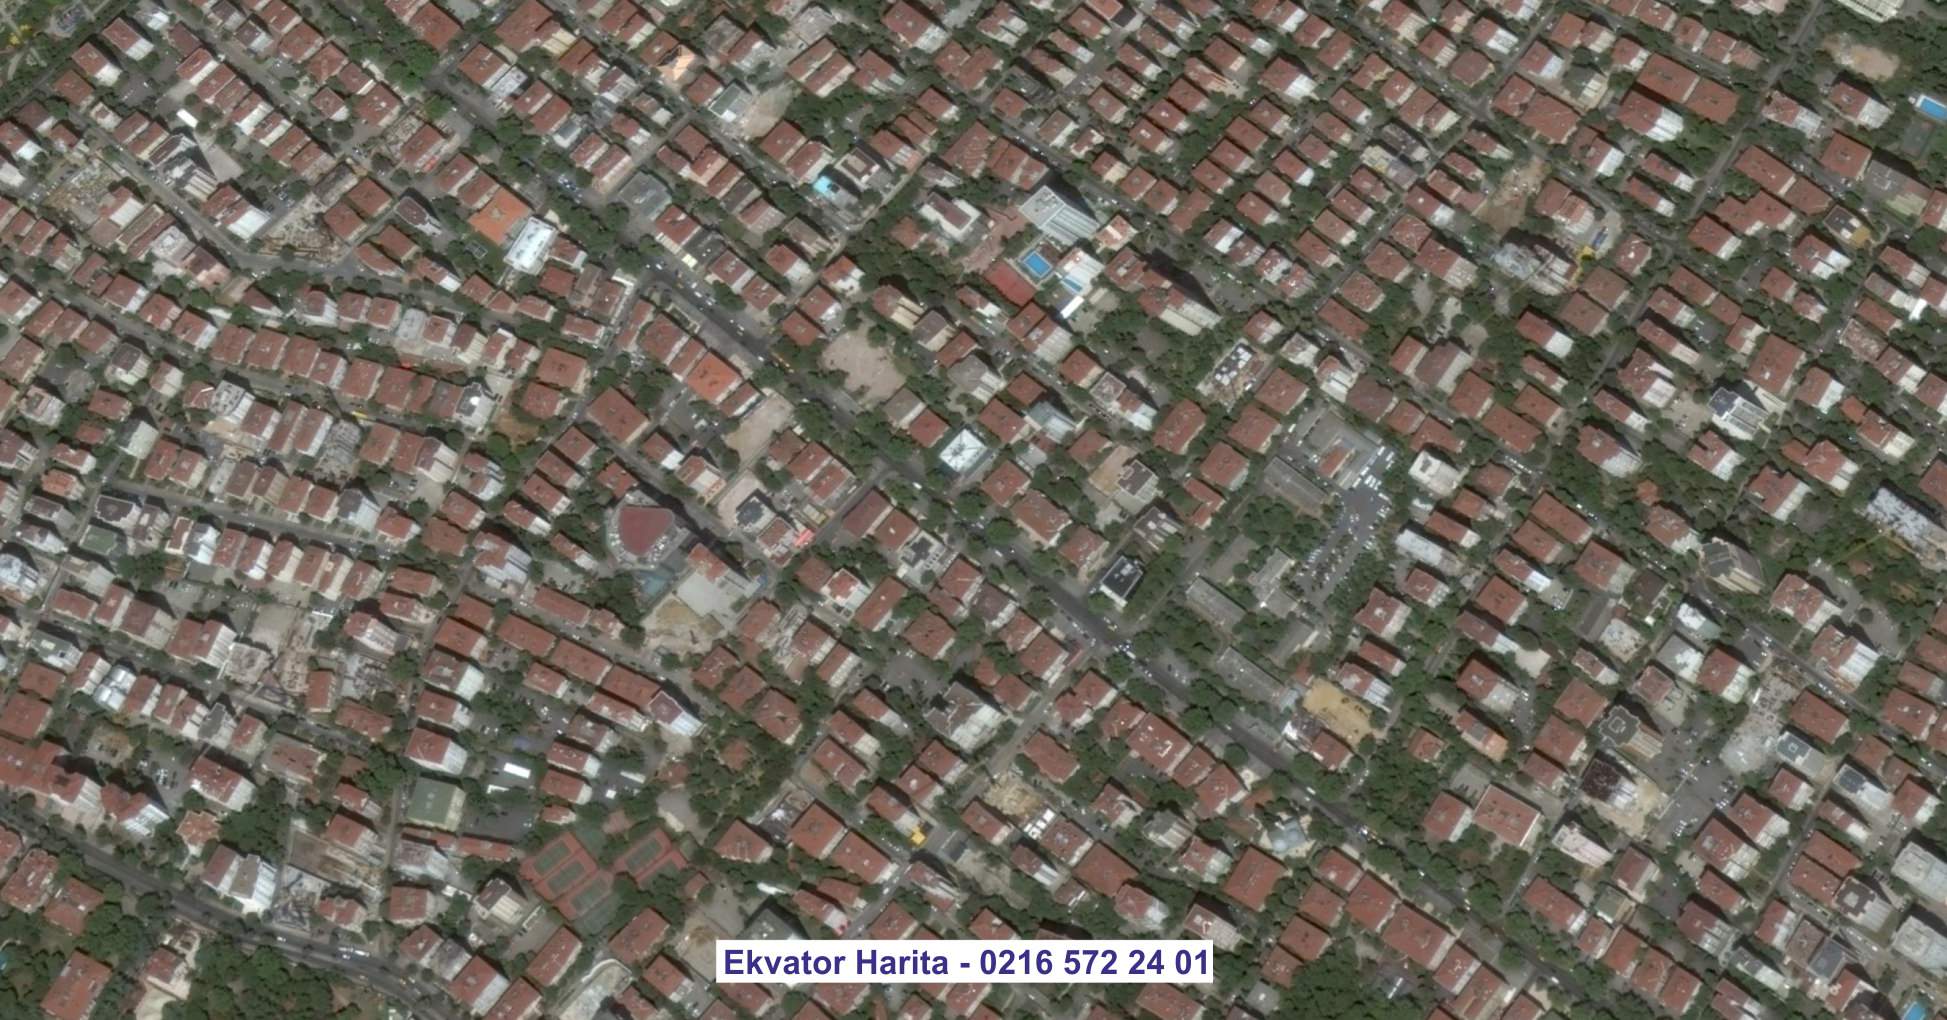 Burdur Uydu Görüntüsü Örnek Fotoğrafı